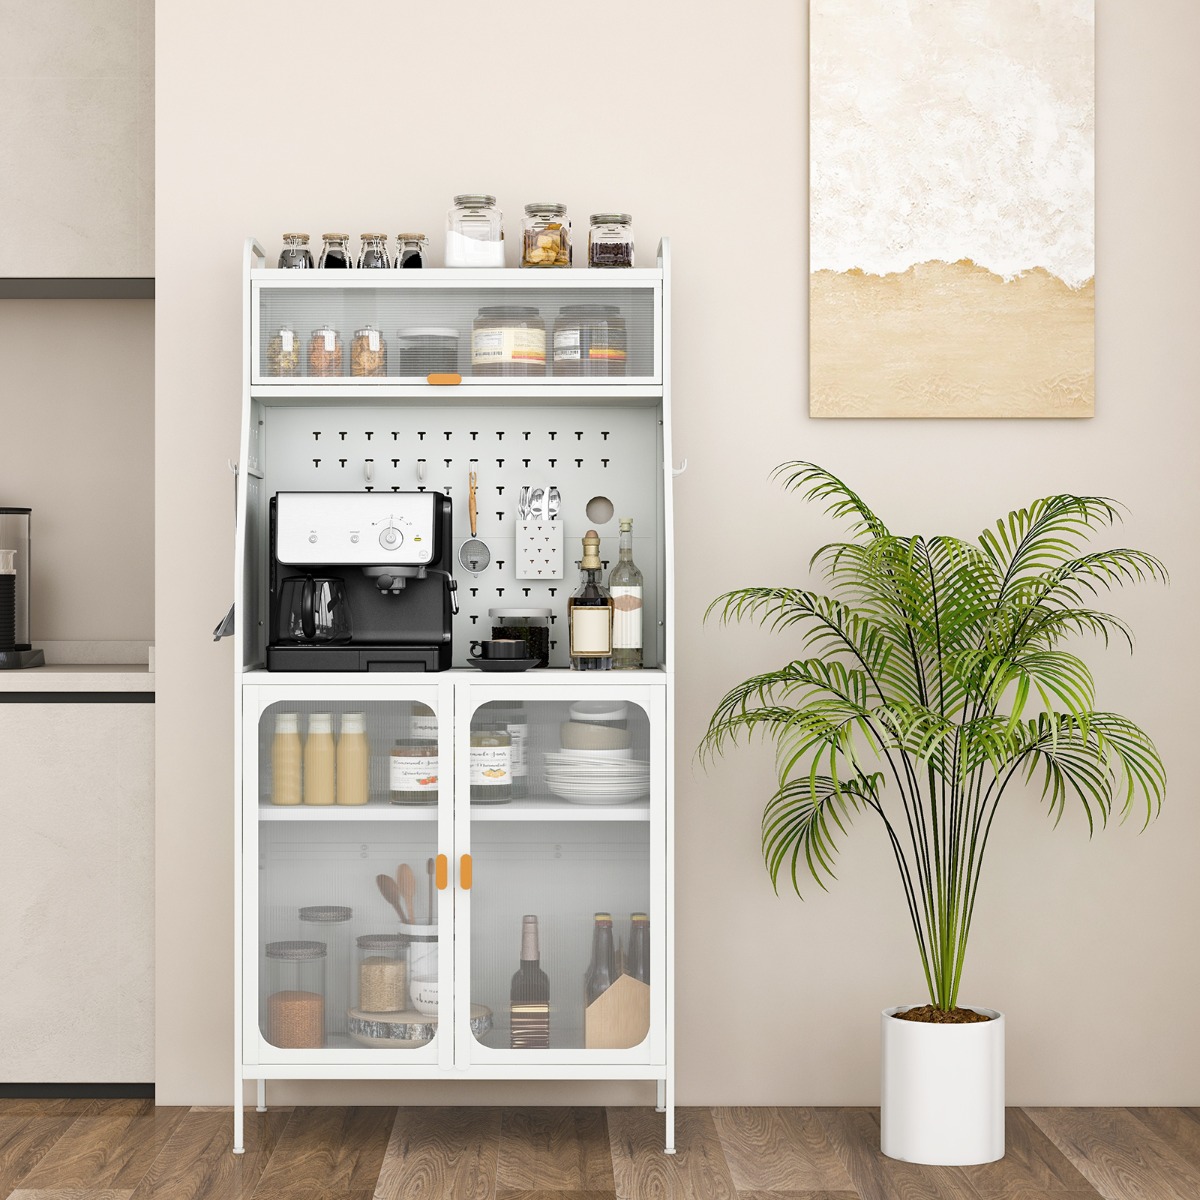 COSTWAY Küchenbuffet Schrank mit Steckbrett, Haken & verstellbarem Regal Weiß